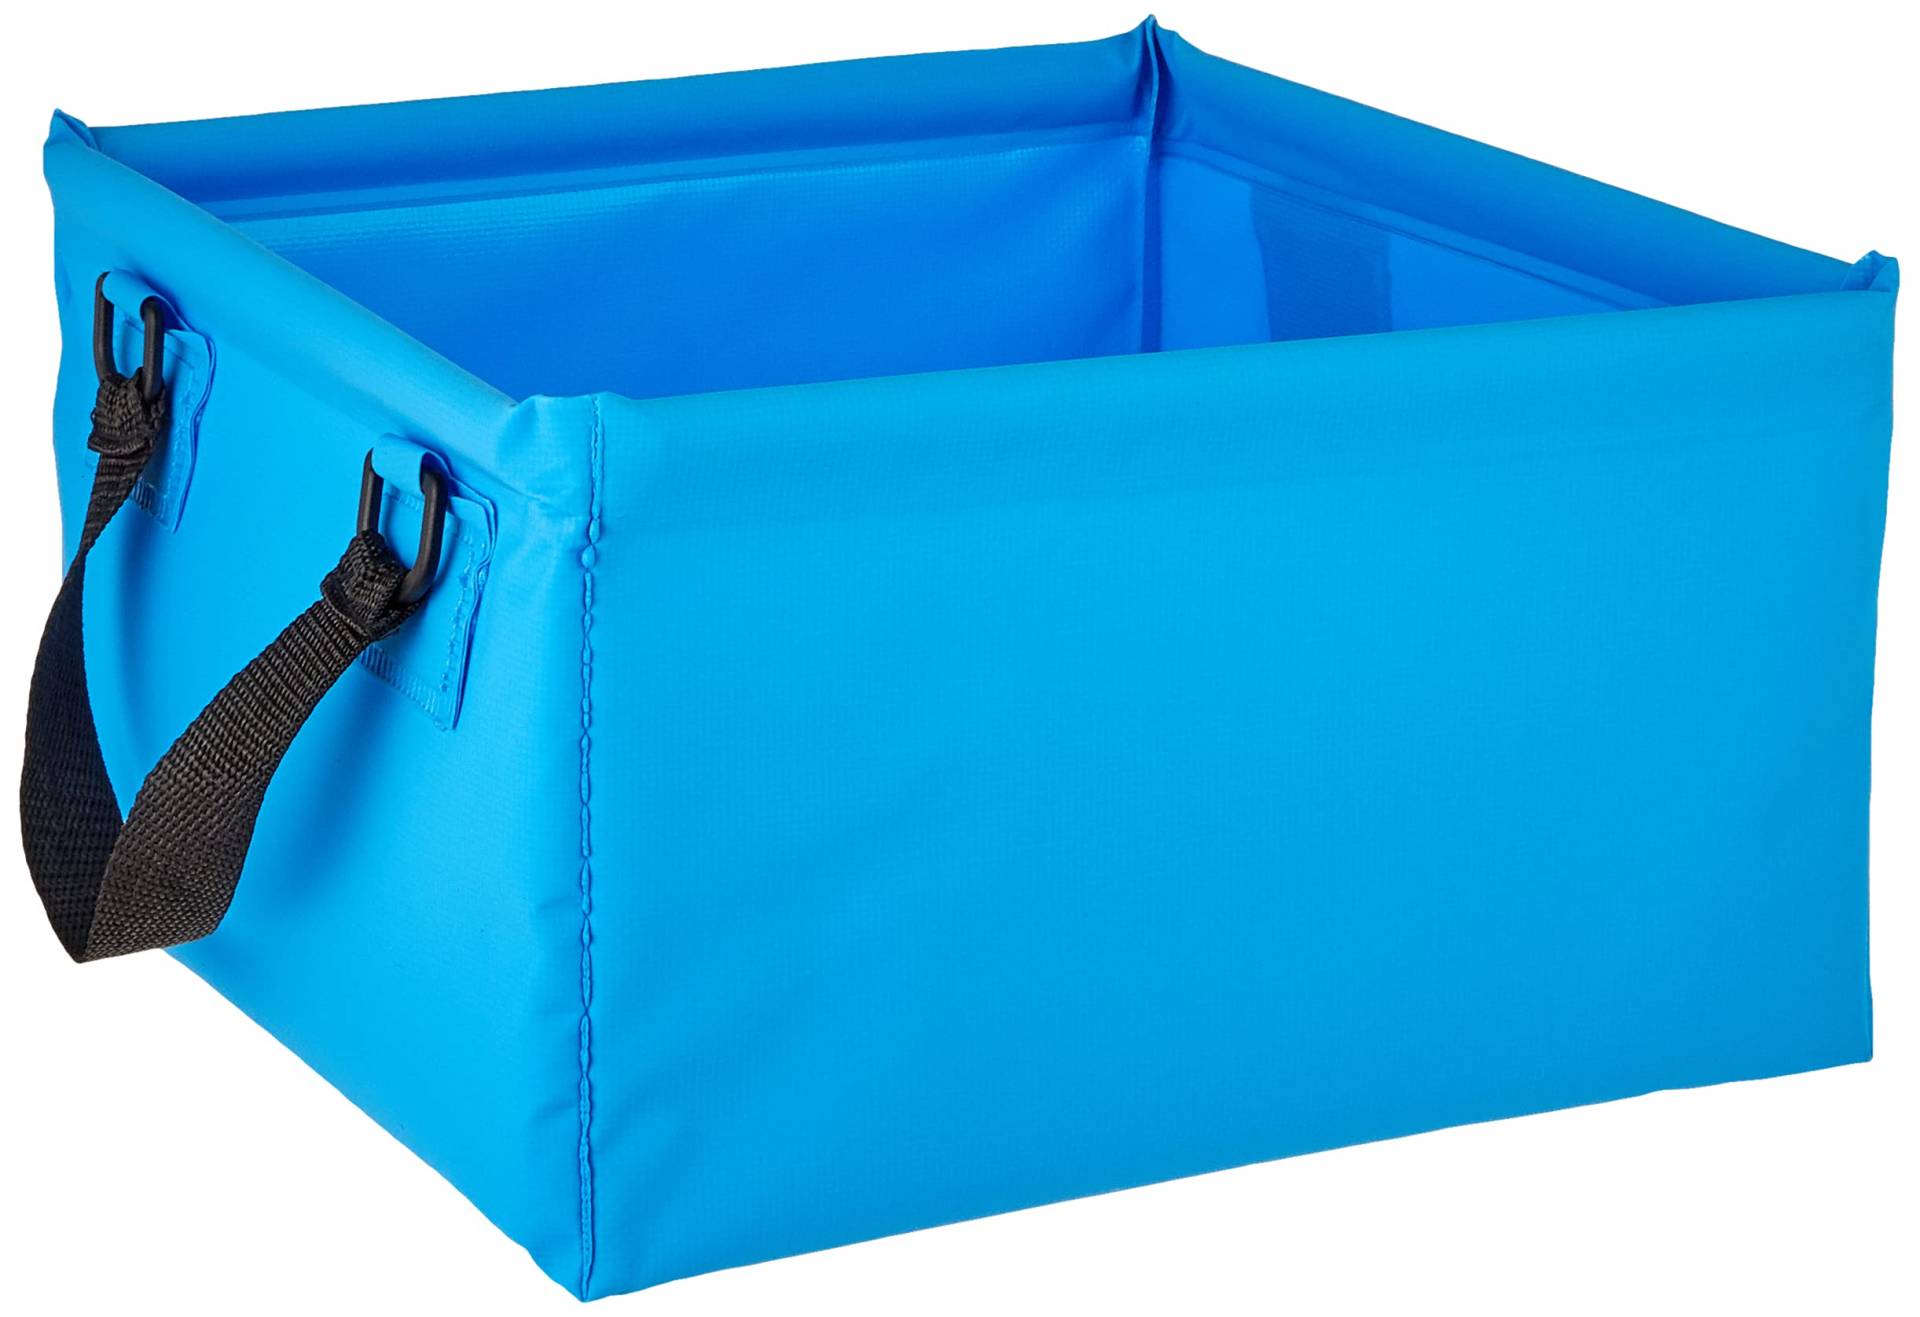 CARTREND 10732 Outdoor Faltschüssel 15 Liter Faltbare Camping Waschschüssel,platzsparend,leichte Alternative zur Plastik Spülschüssel,Spülwanne, Blau von cartrend